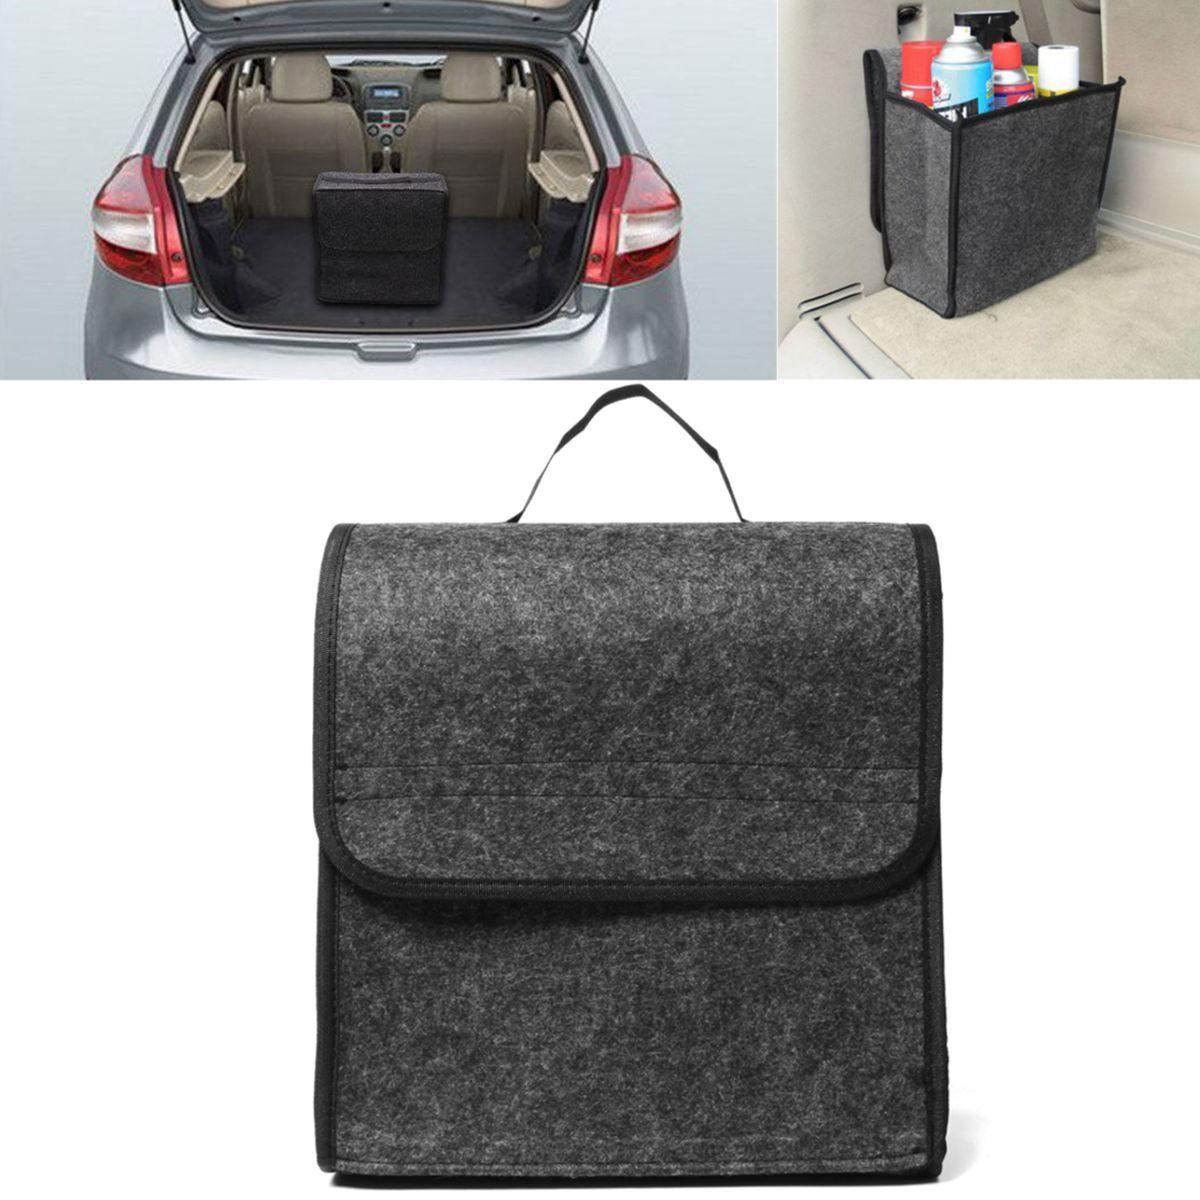 11.8x11.4 x6.3inch Felt Cloth Foldable Car Back Rear Seat Organizer Travel Storage Interior Bag Hold